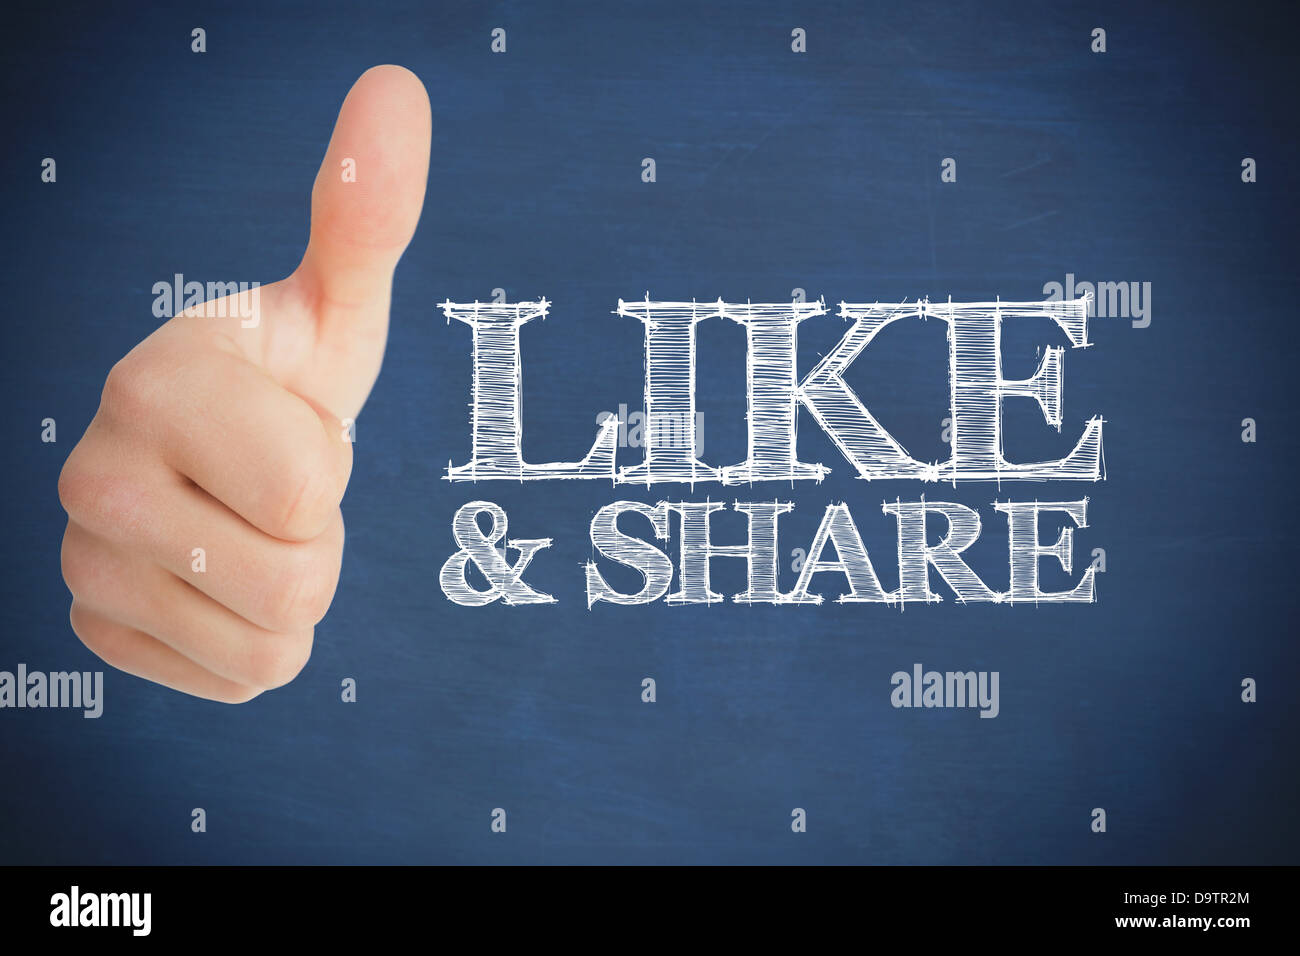 Thumb up representing social network logo Stock Photo